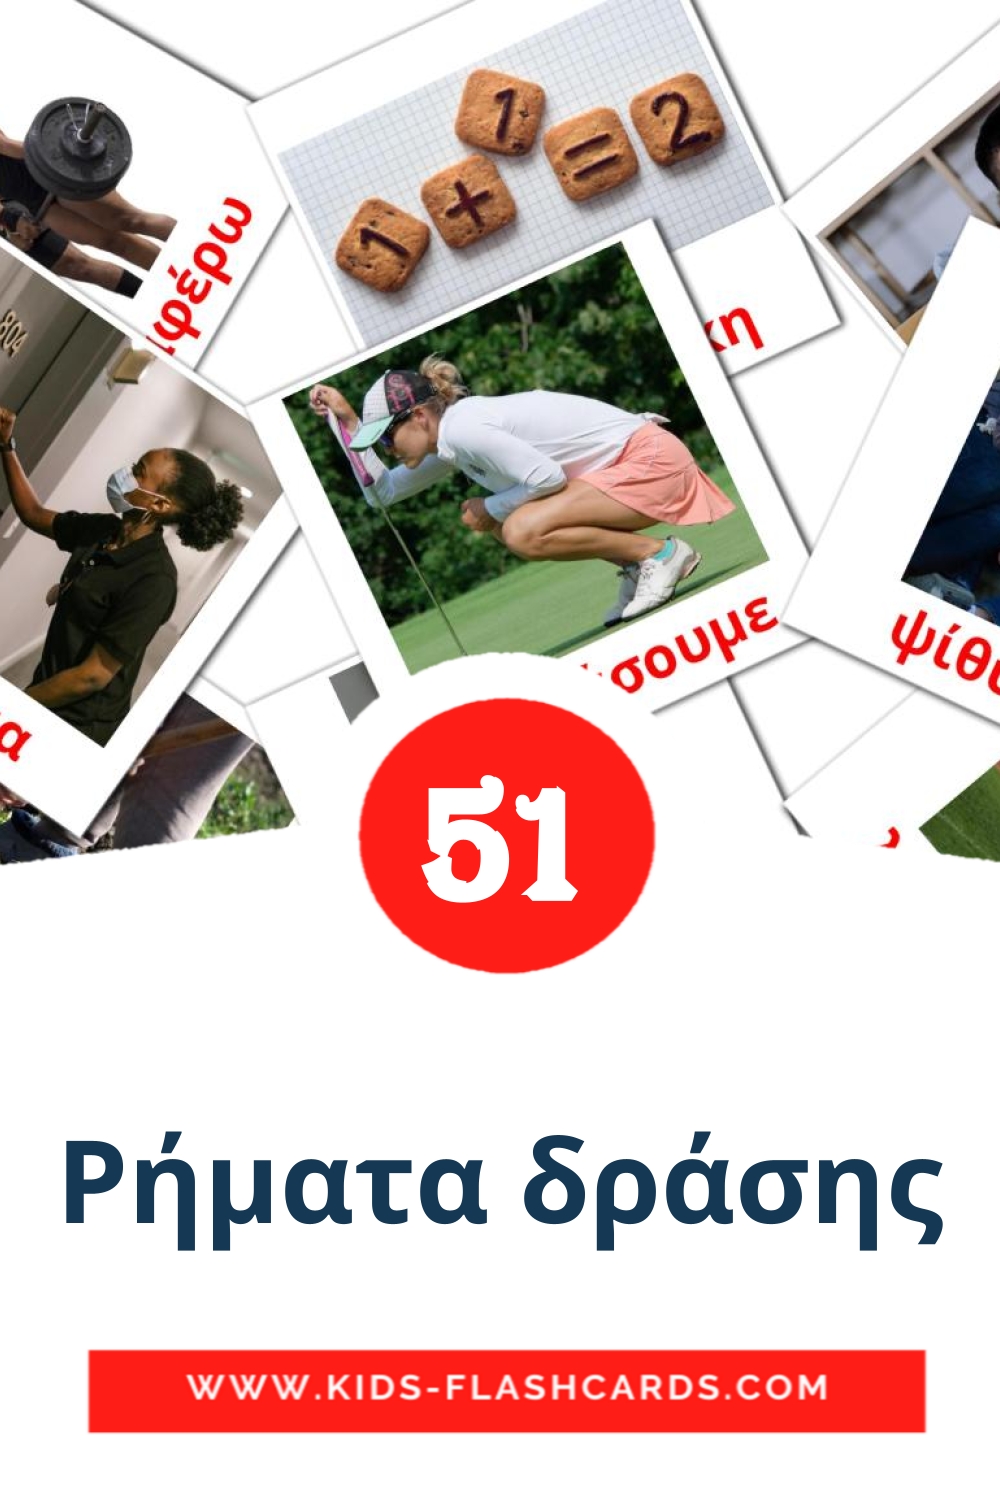 54 Ρήματα δράσης Picture Cards for Kindergarden in greek